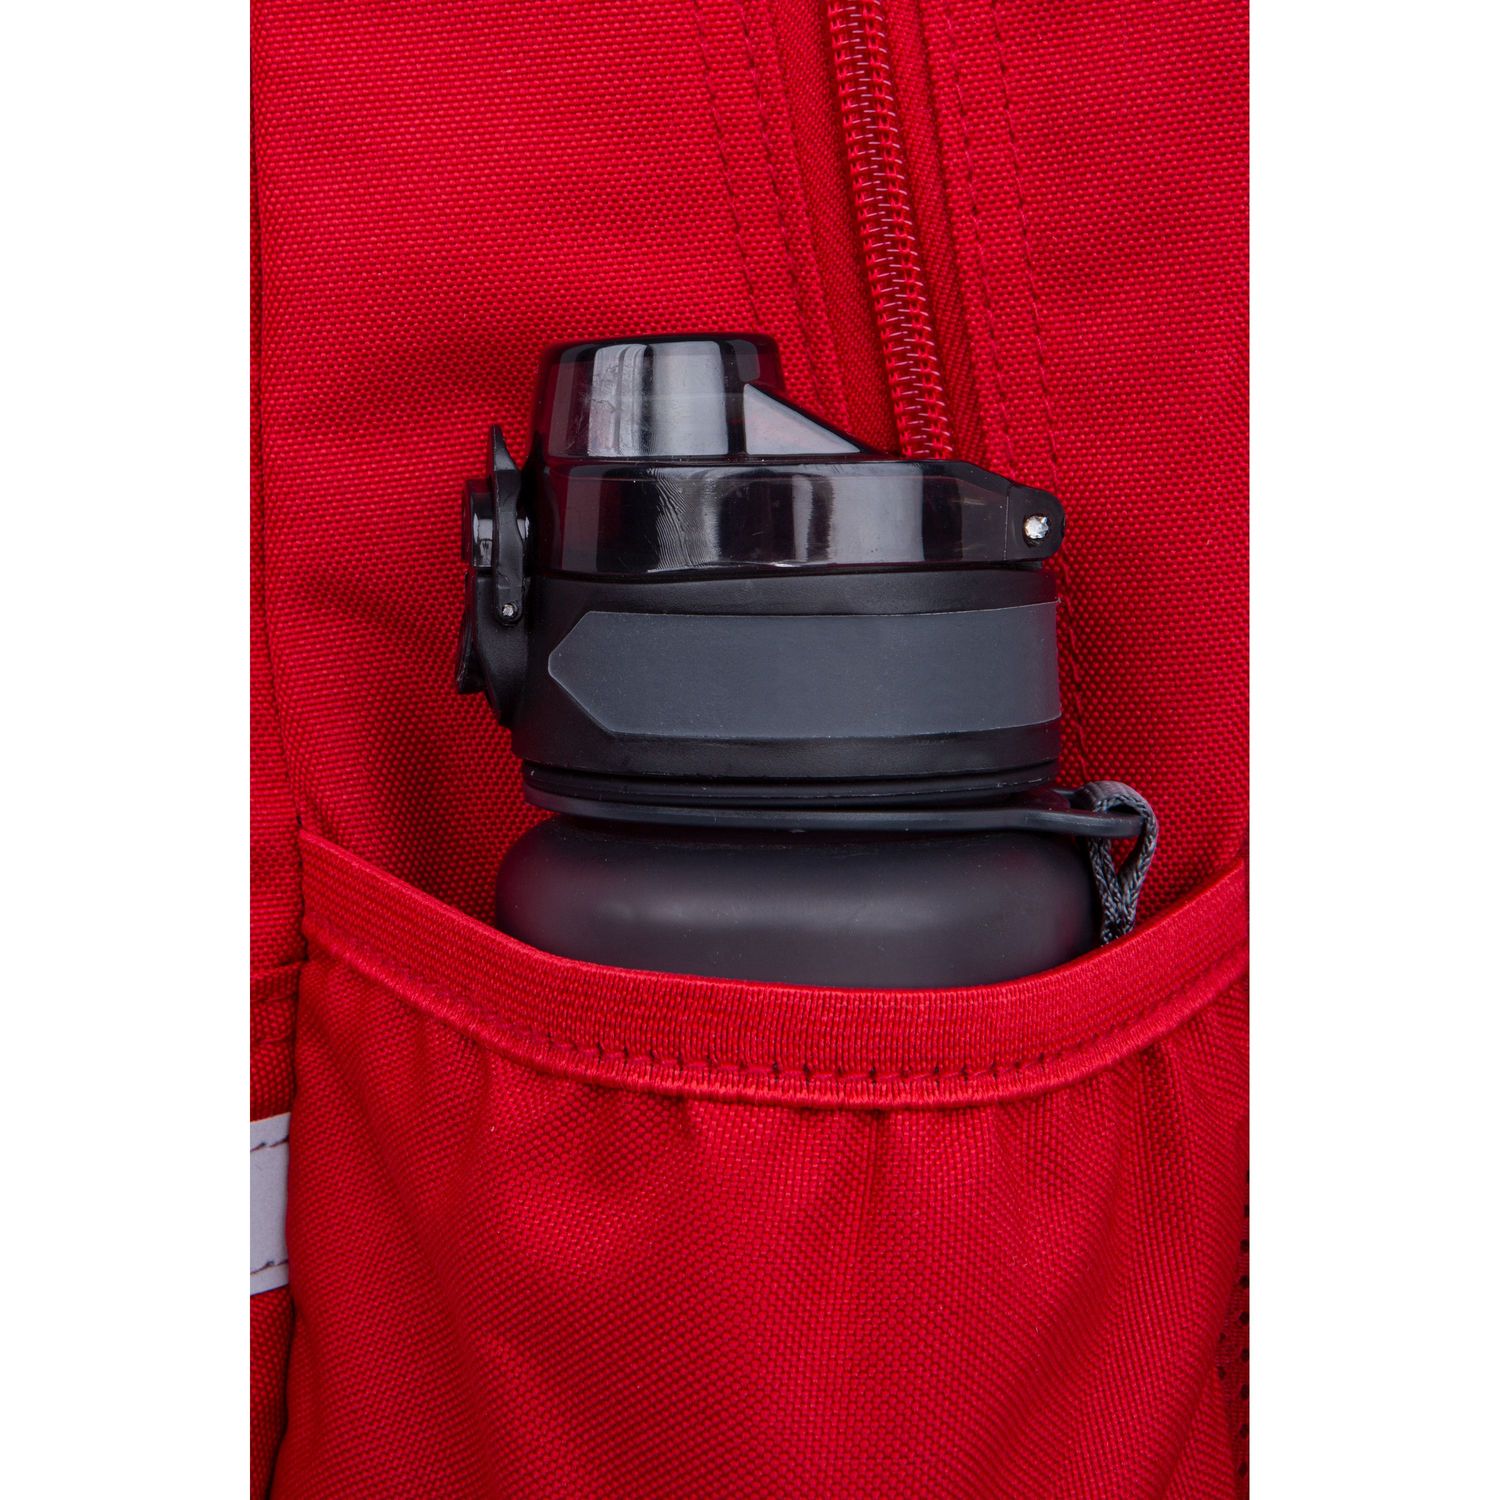 Рюкзак CoolPack Rіder Rpet Red, 27 л, 44x33x19 см (F059642) - фото 4